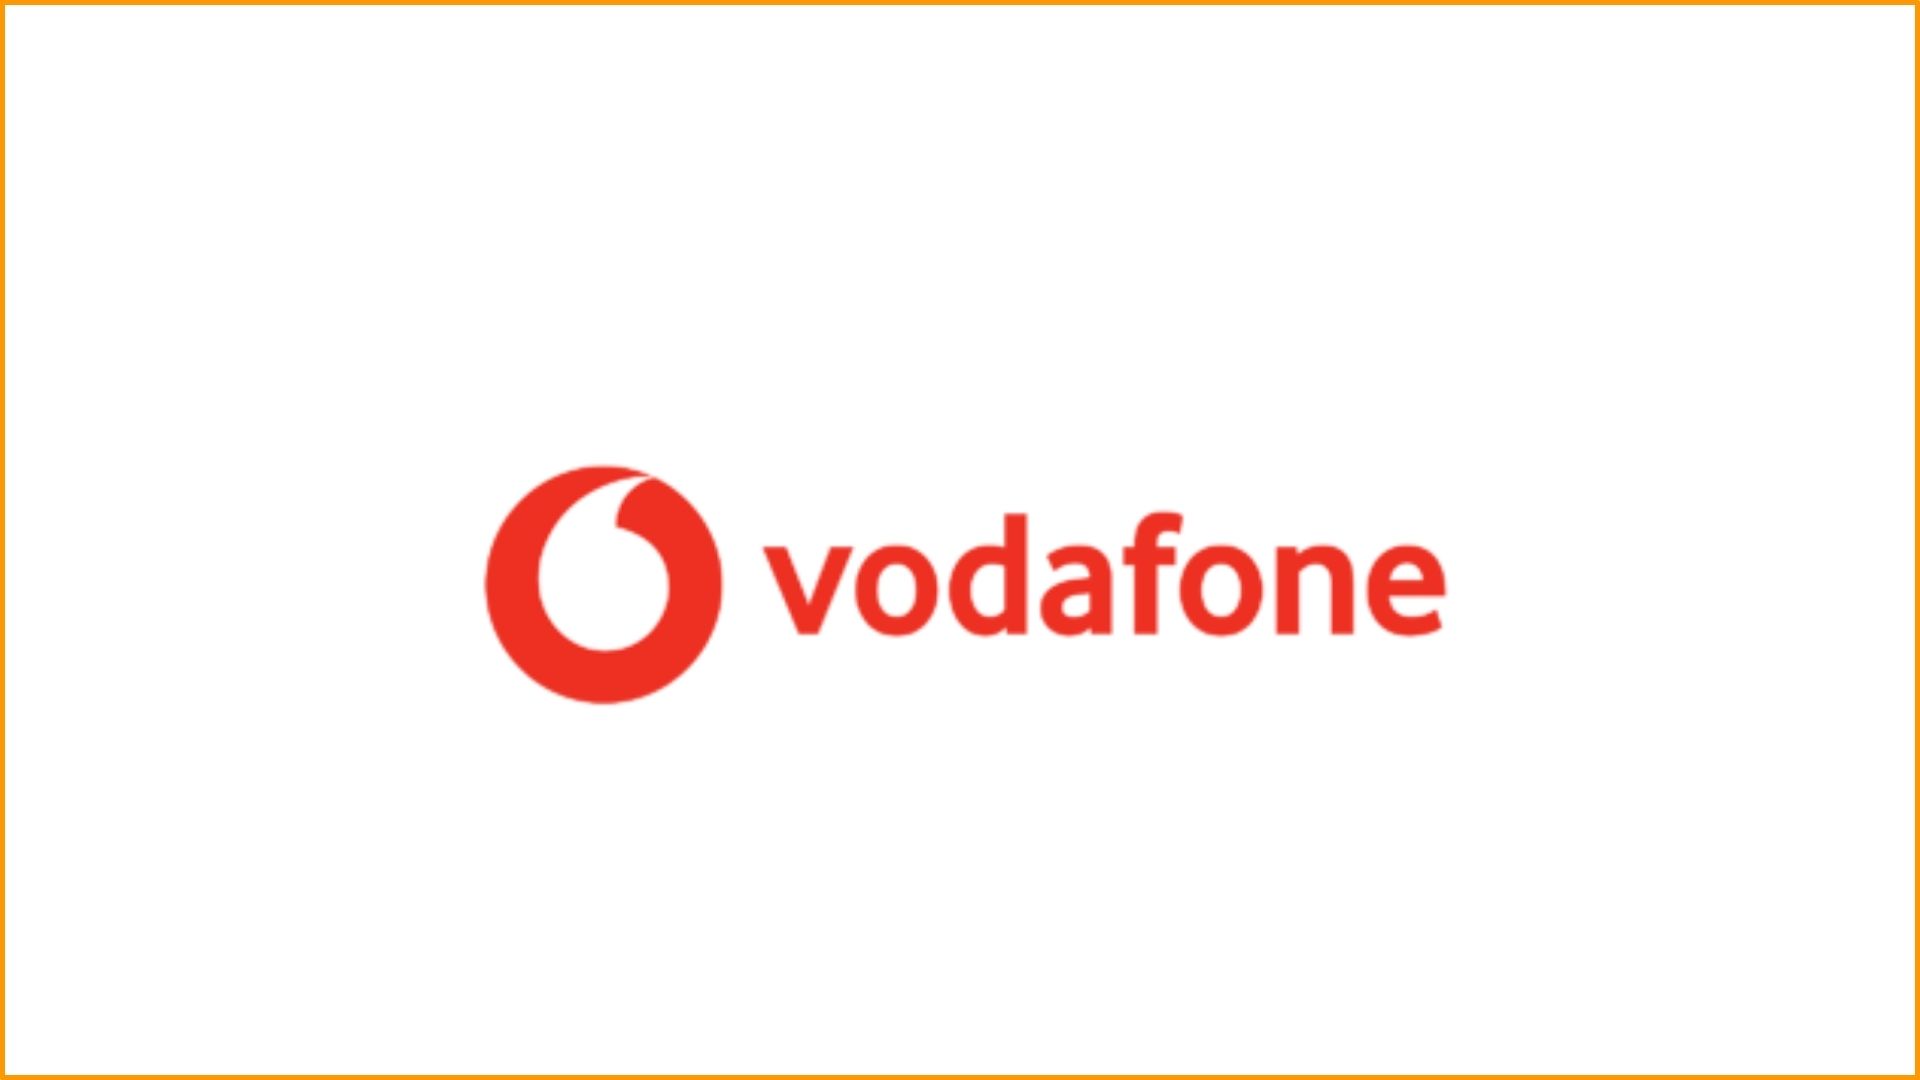 Vodafone_1920x1080